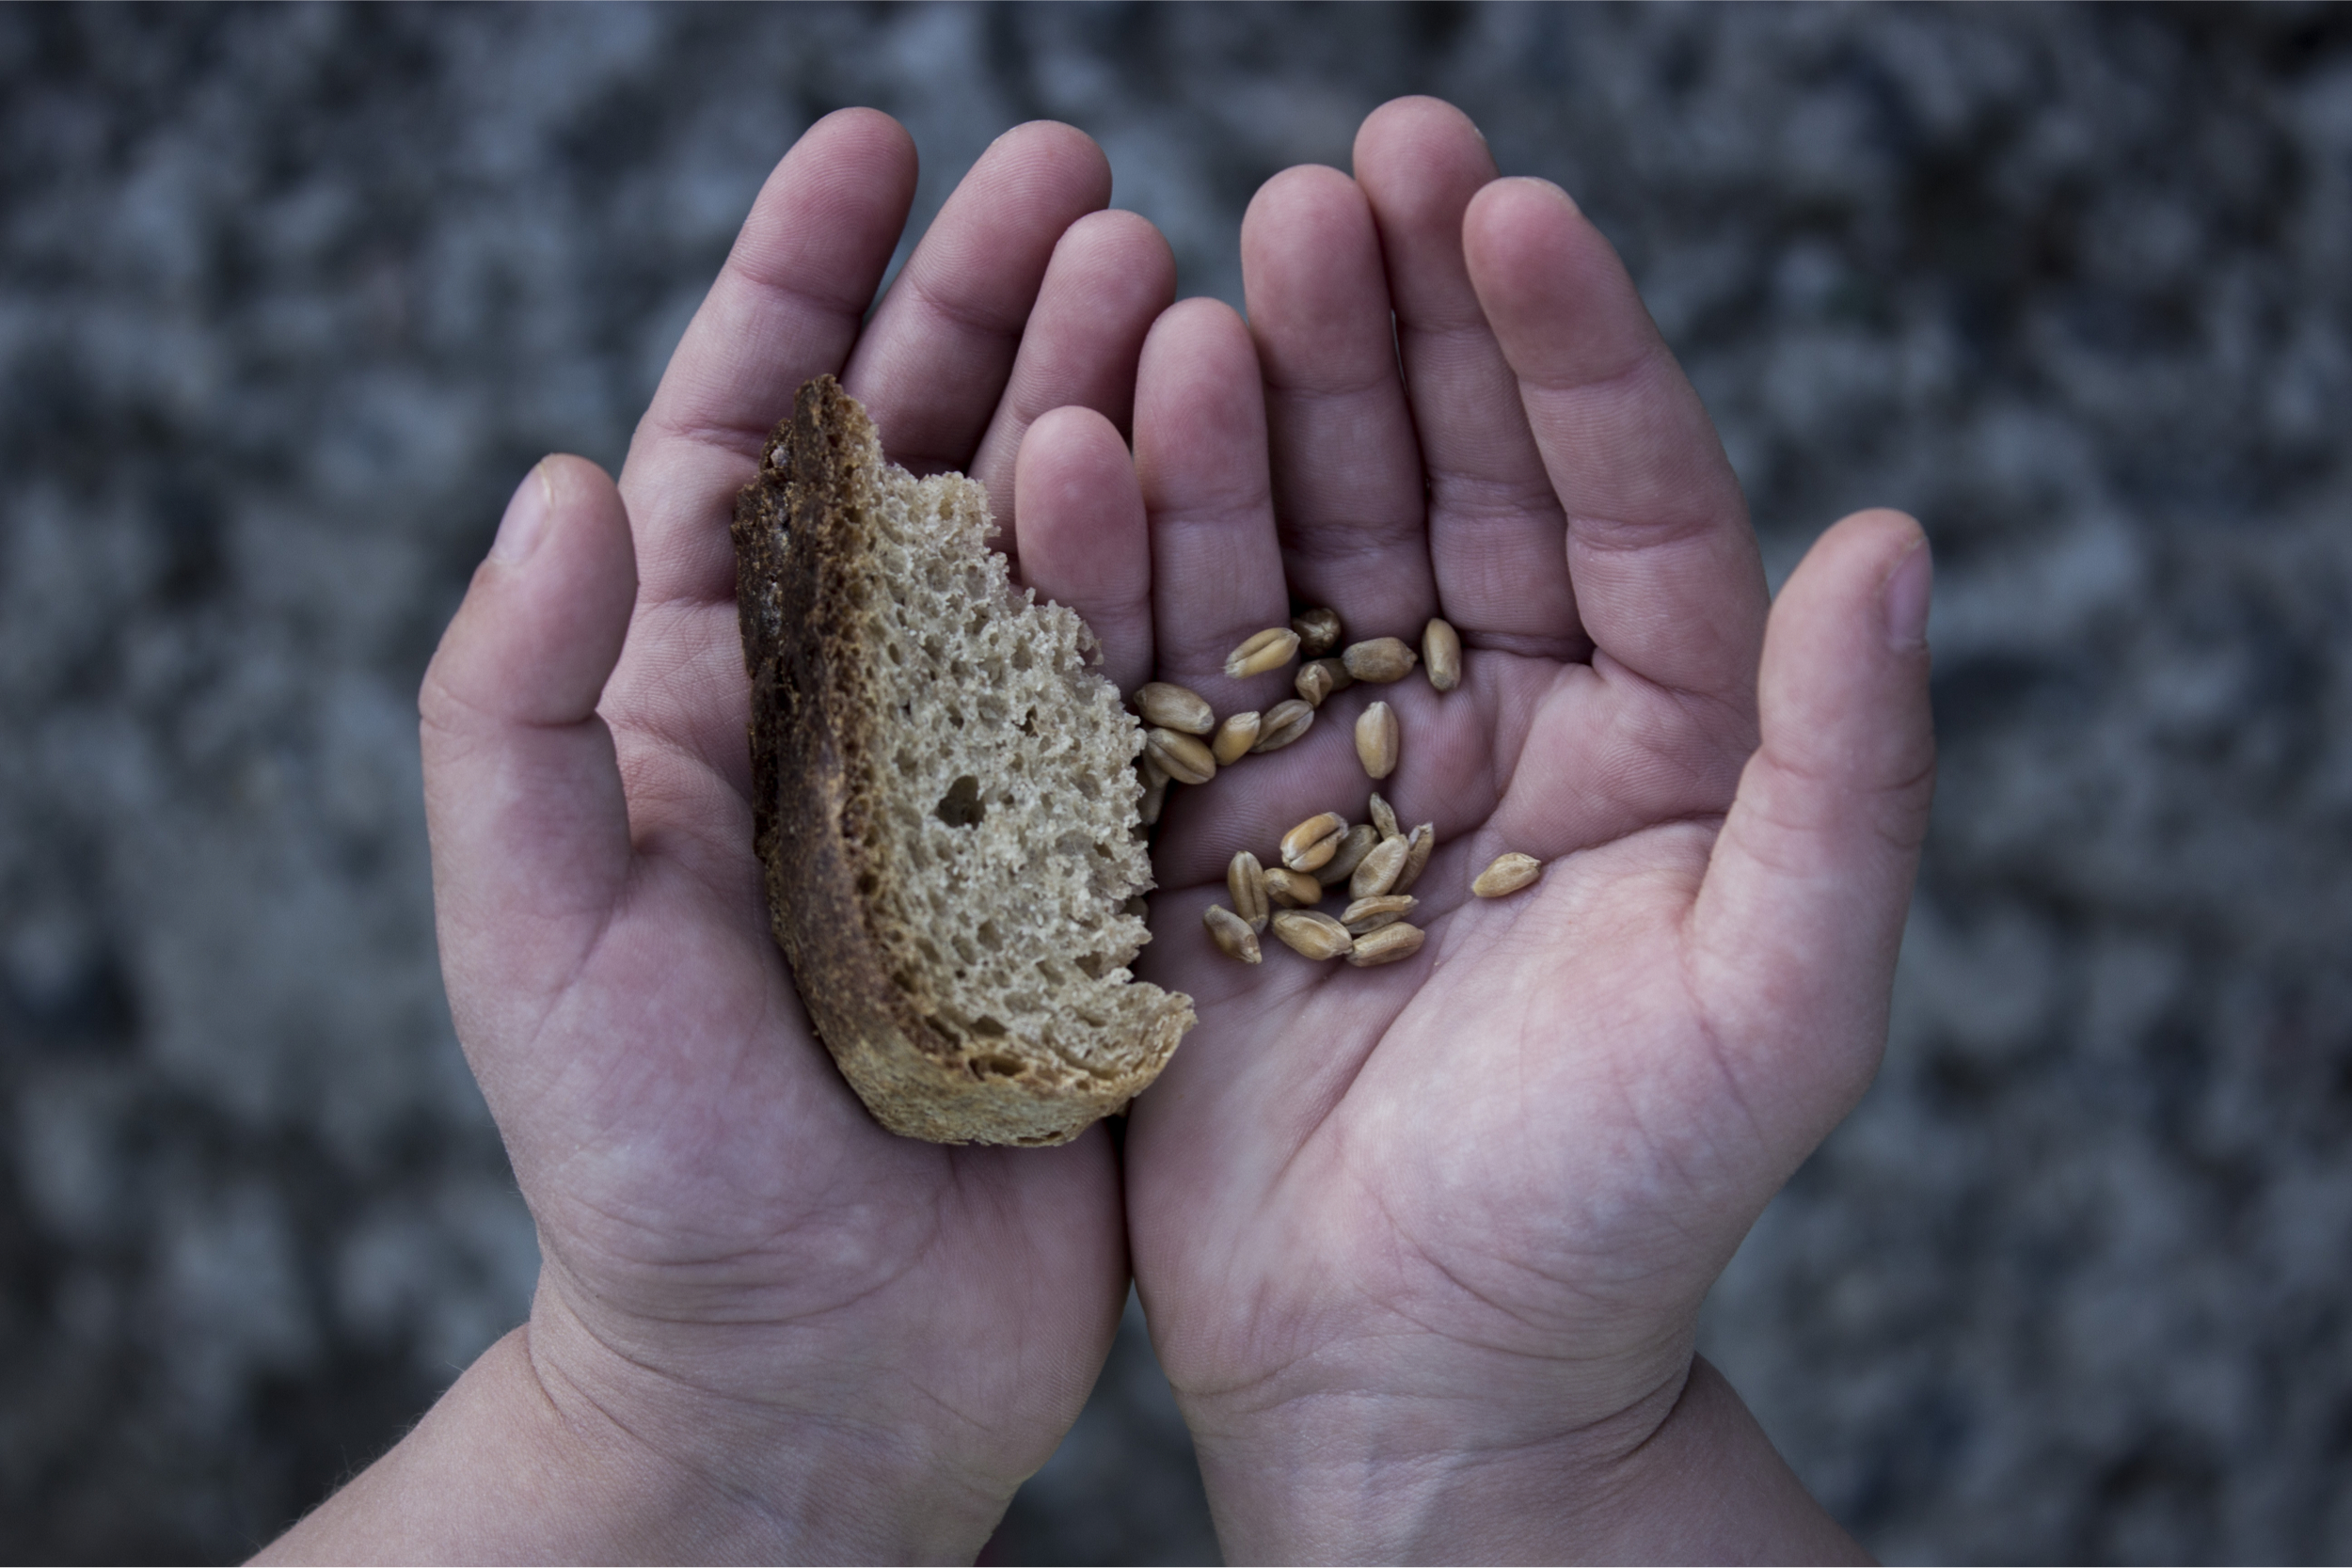 ubóstwo żywnościowe wśród dzieci w UE, fot. Shutterstock